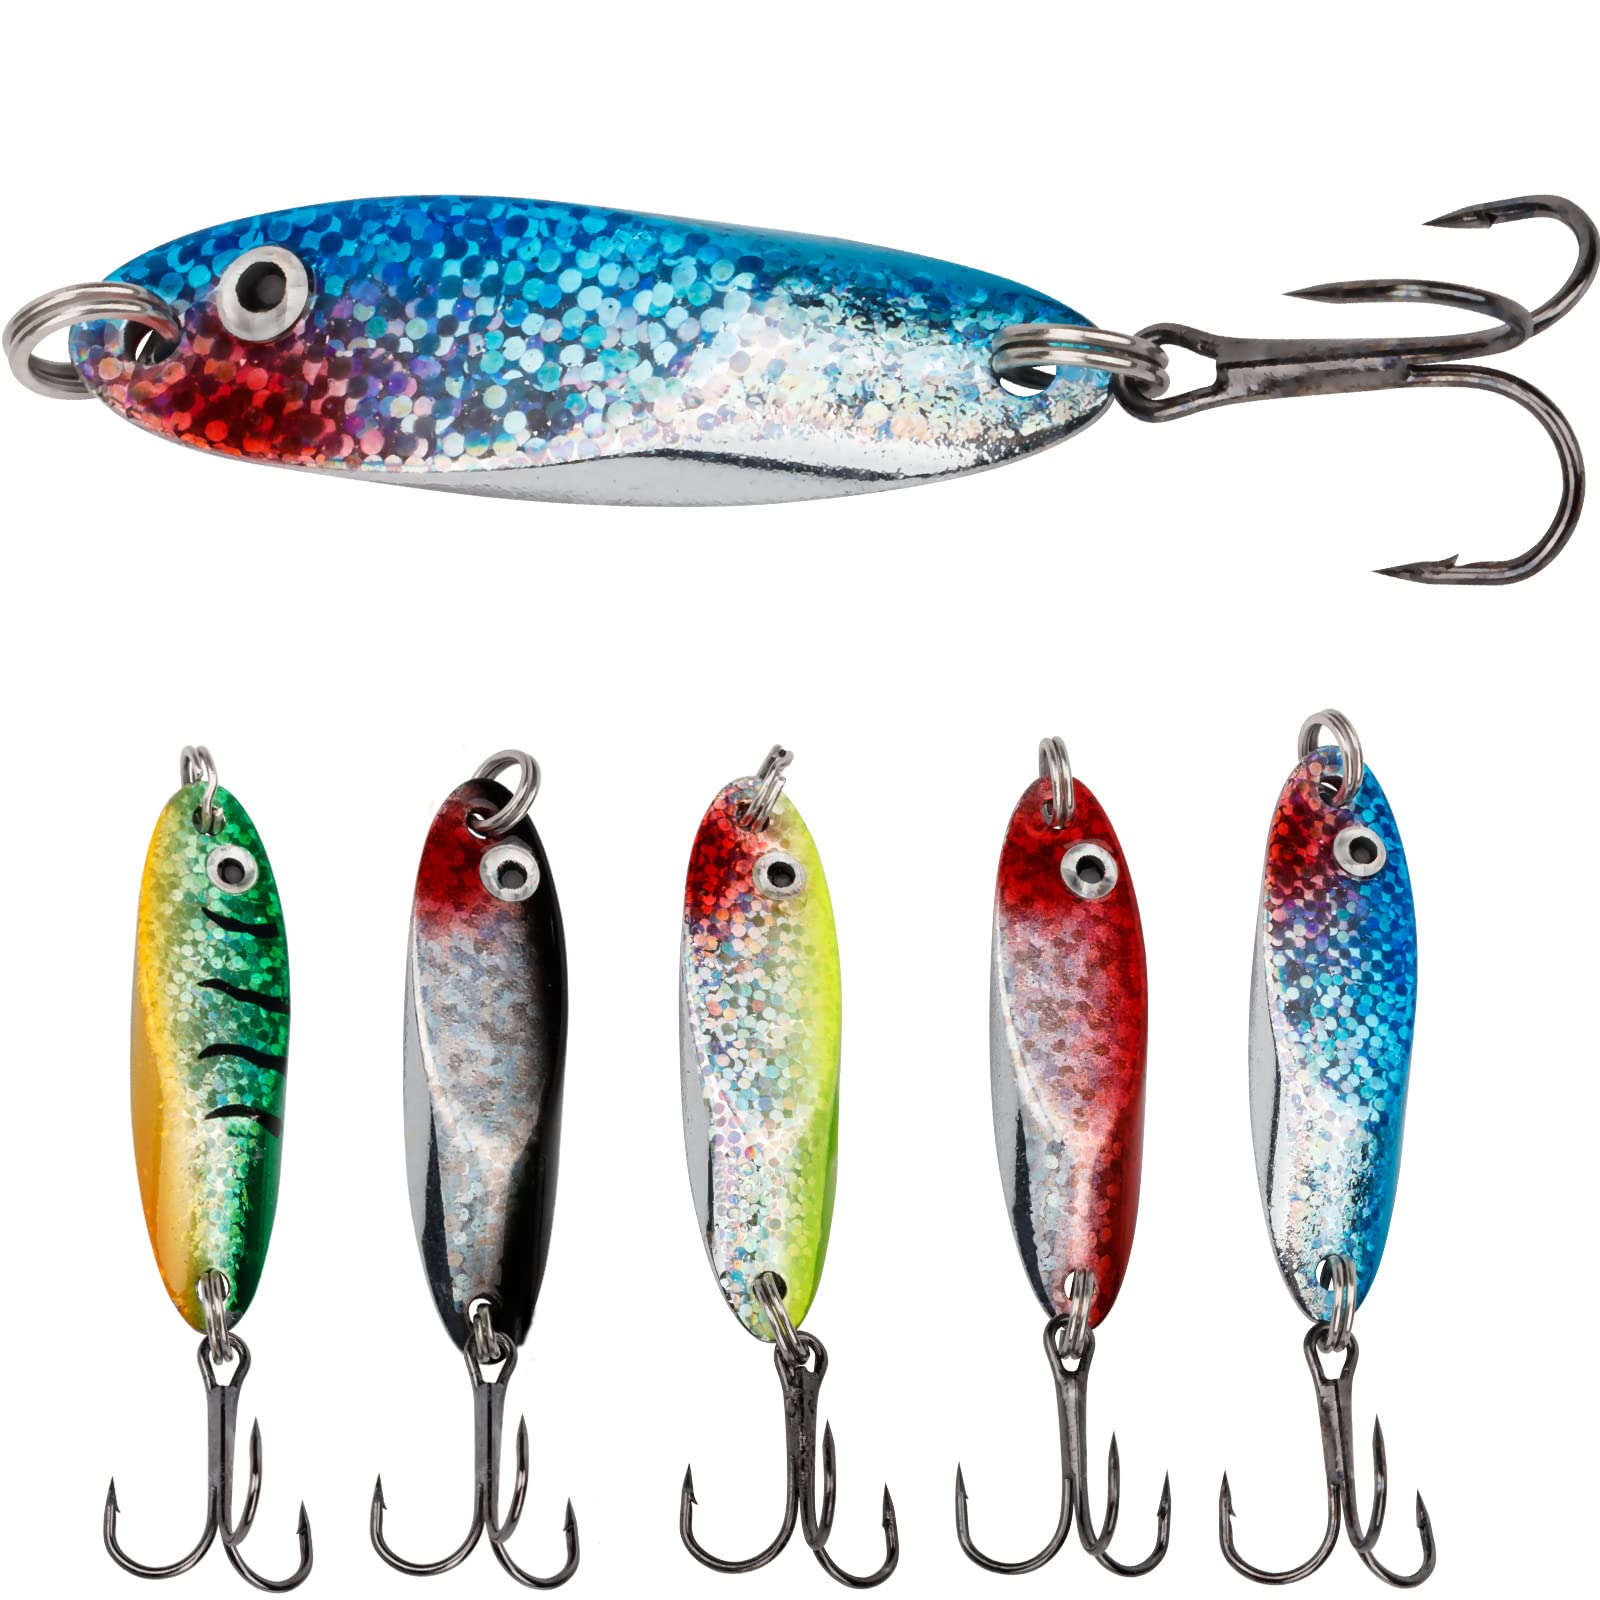 THKFISH Fishing Lures Fishing Spoons Trout Lures Saltwater Spoon Lures  Casting Spoon for Trout Bass Pike Walleye 1/8oz 1/5oz 1/4oz 3/8oz 1/2oz  3/4oz 5pcs Color 1# 3/4oz(21g)* 5pcs